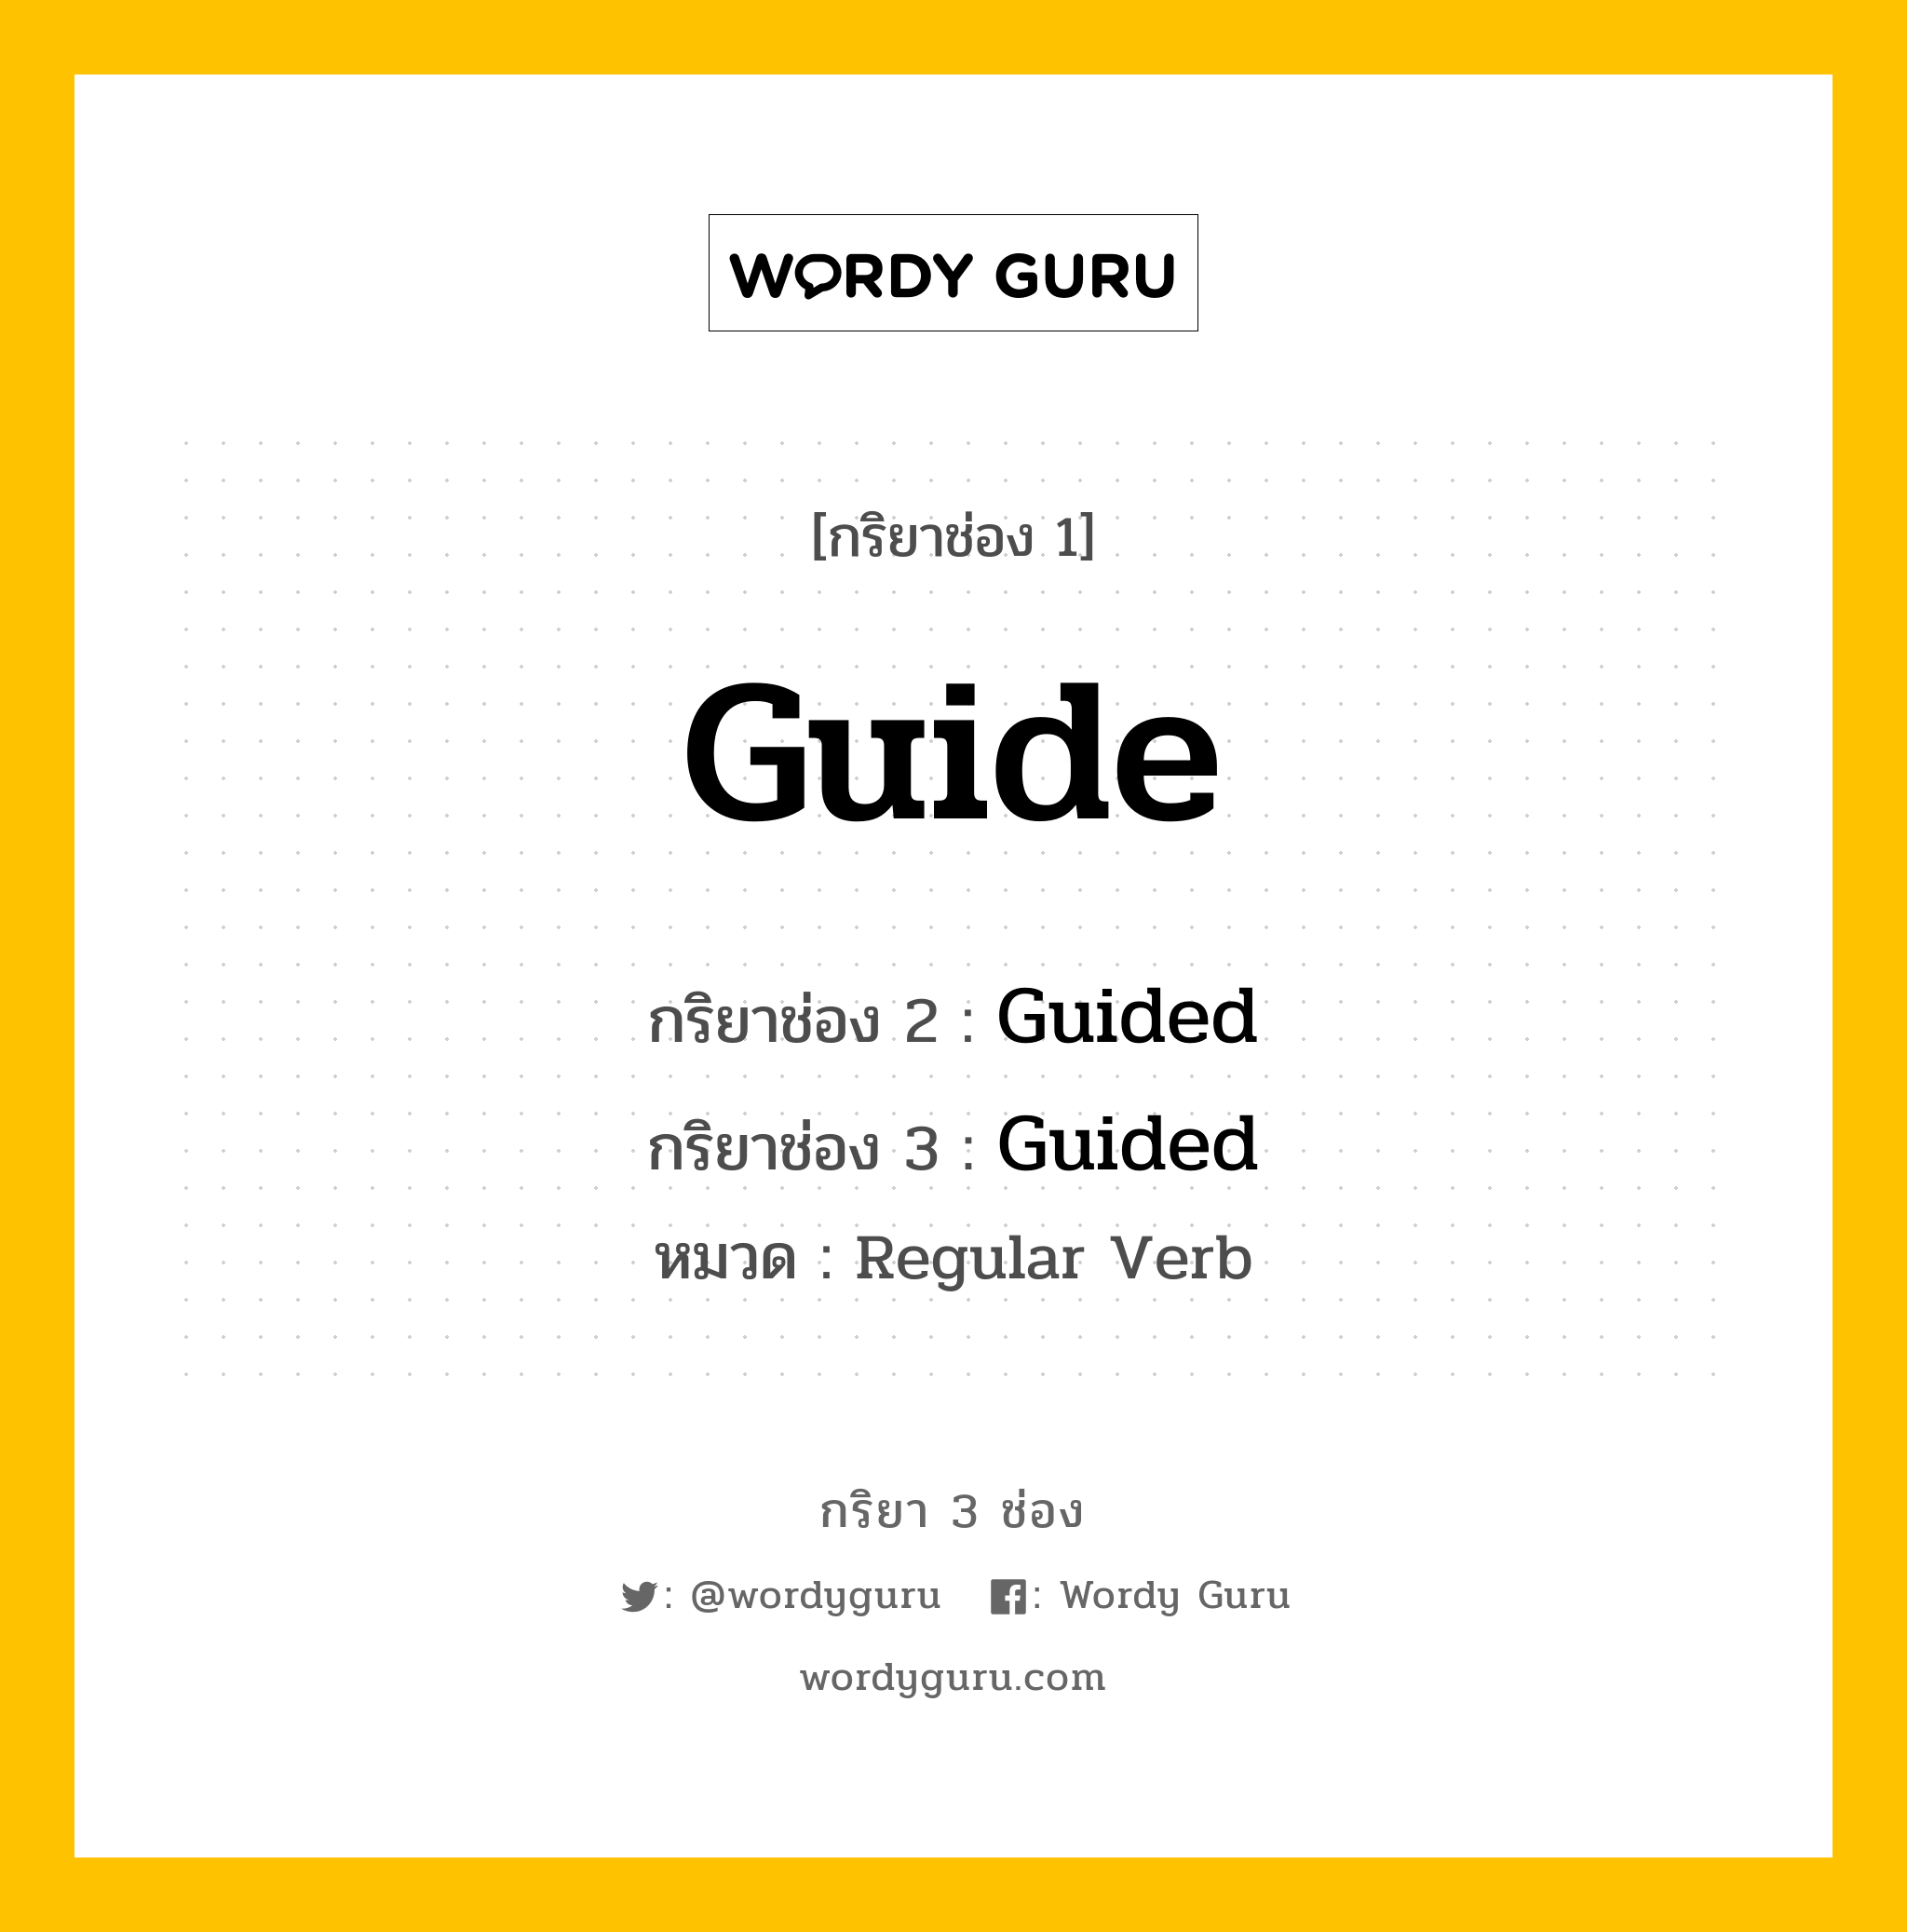 กริยา 3 ช่อง: Guide ช่อง 2 Guide ช่อง 3 คืออะไร, กริยาช่อง 1 Guide กริยาช่อง 2 Guided กริยาช่อง 3 Guided หมวด Regular Verb หมวด Regular Verb